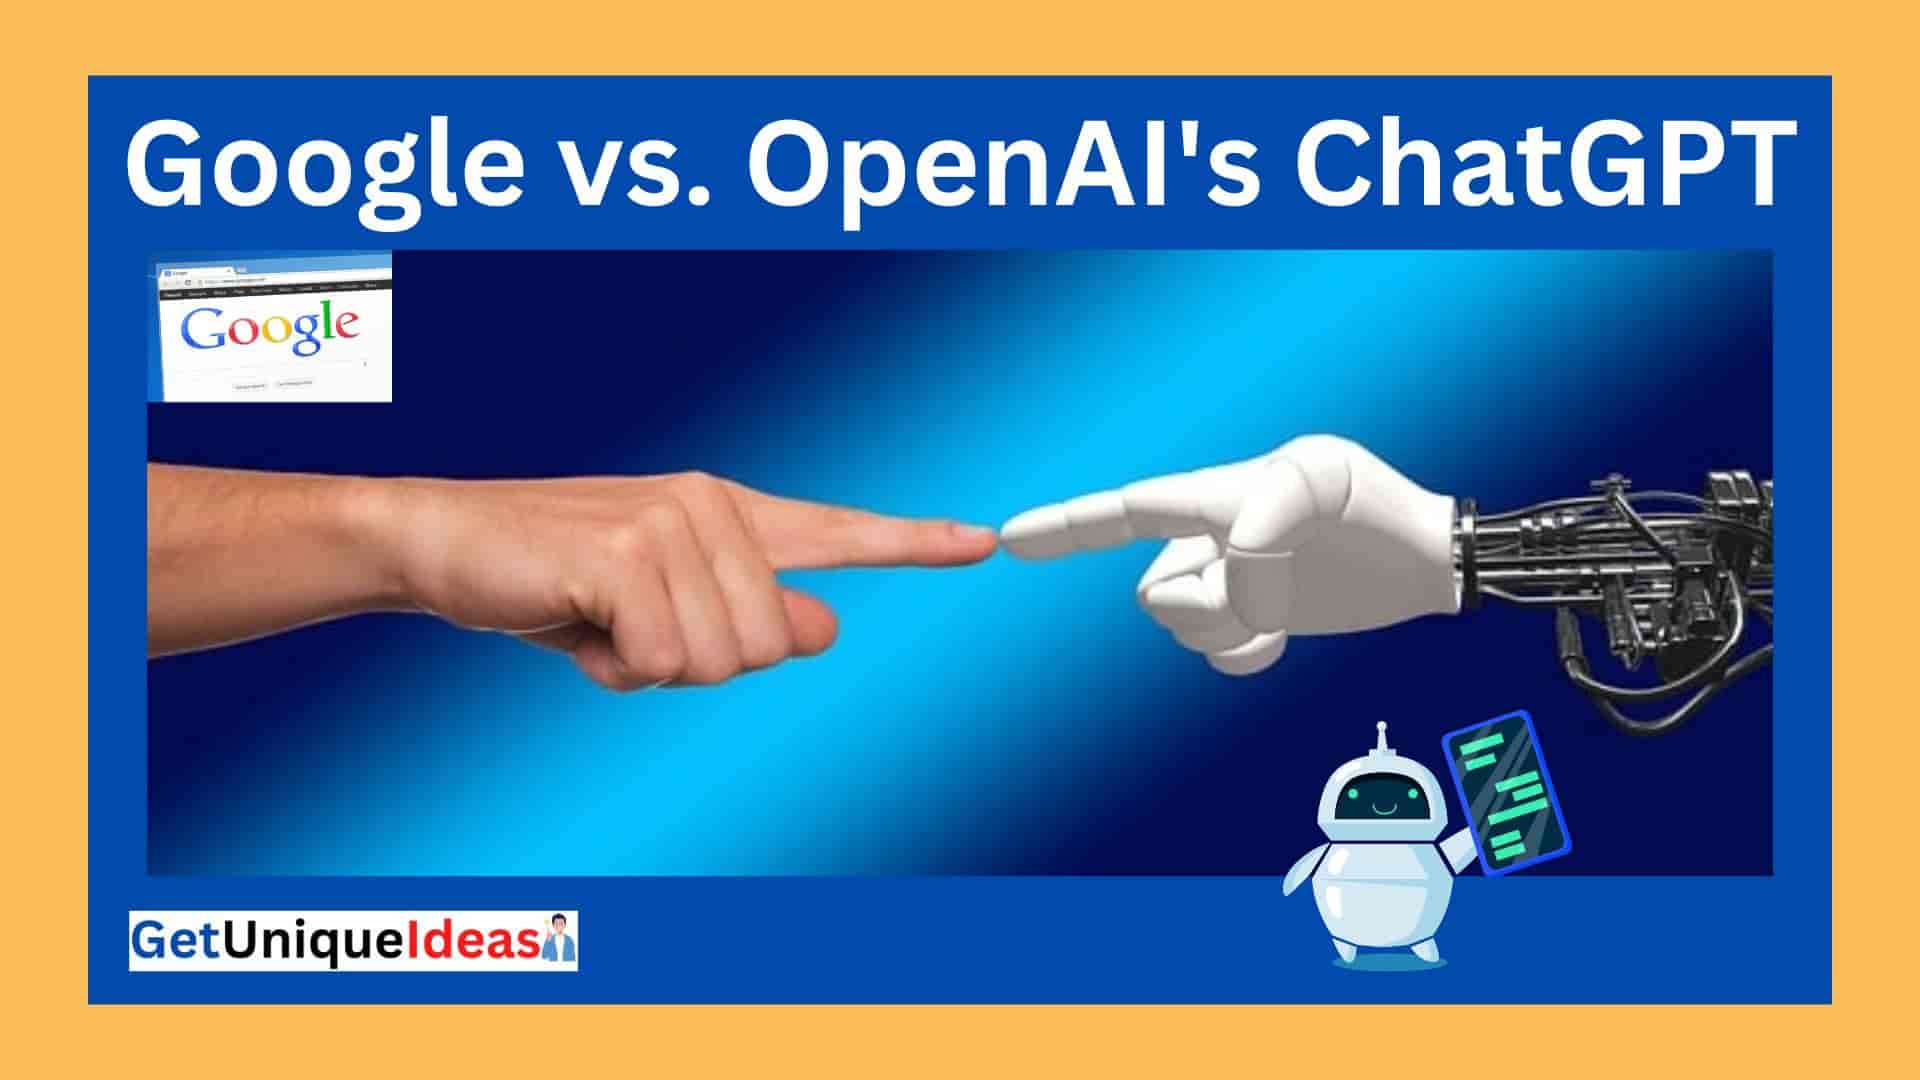 Google vs. OpenAI's ChatGPT